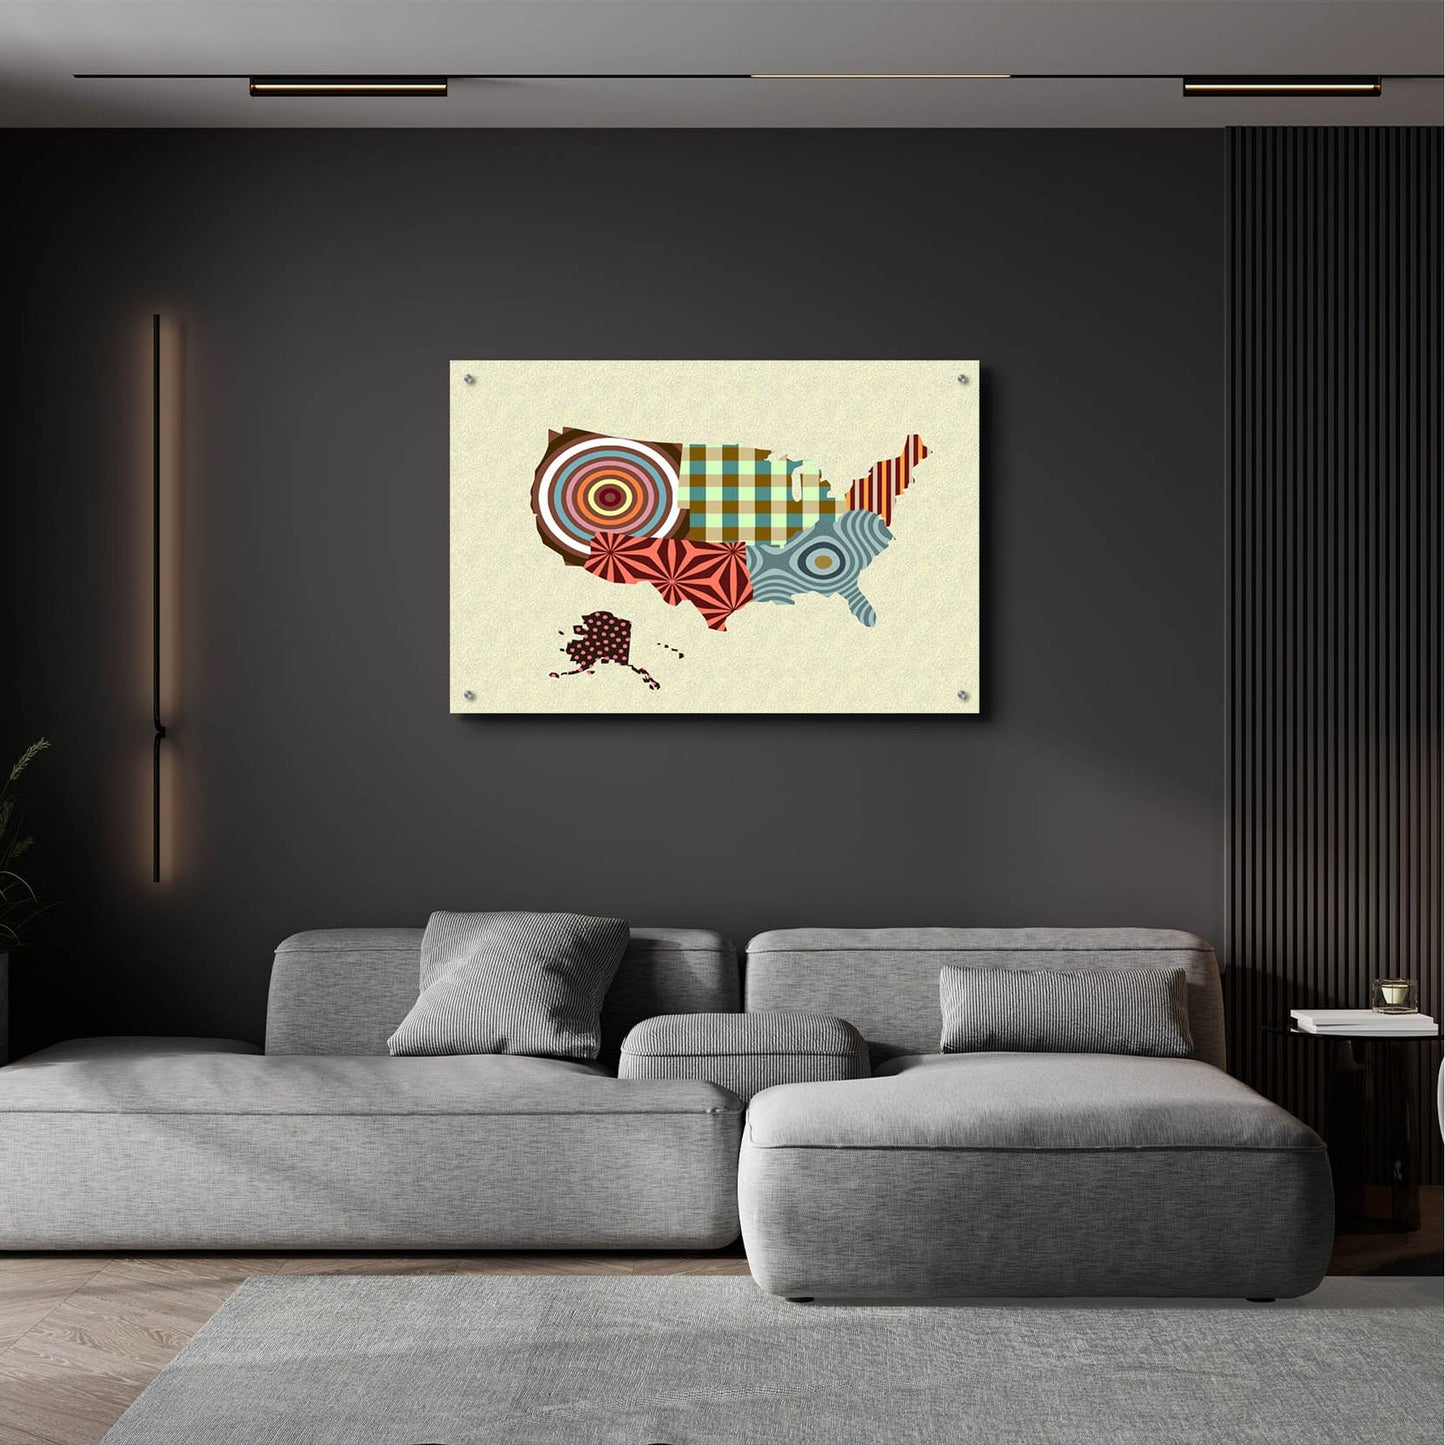 Epic Art 'USA Map' by Lanre Adefioye, Acrylic Glass Wall Art,36x24